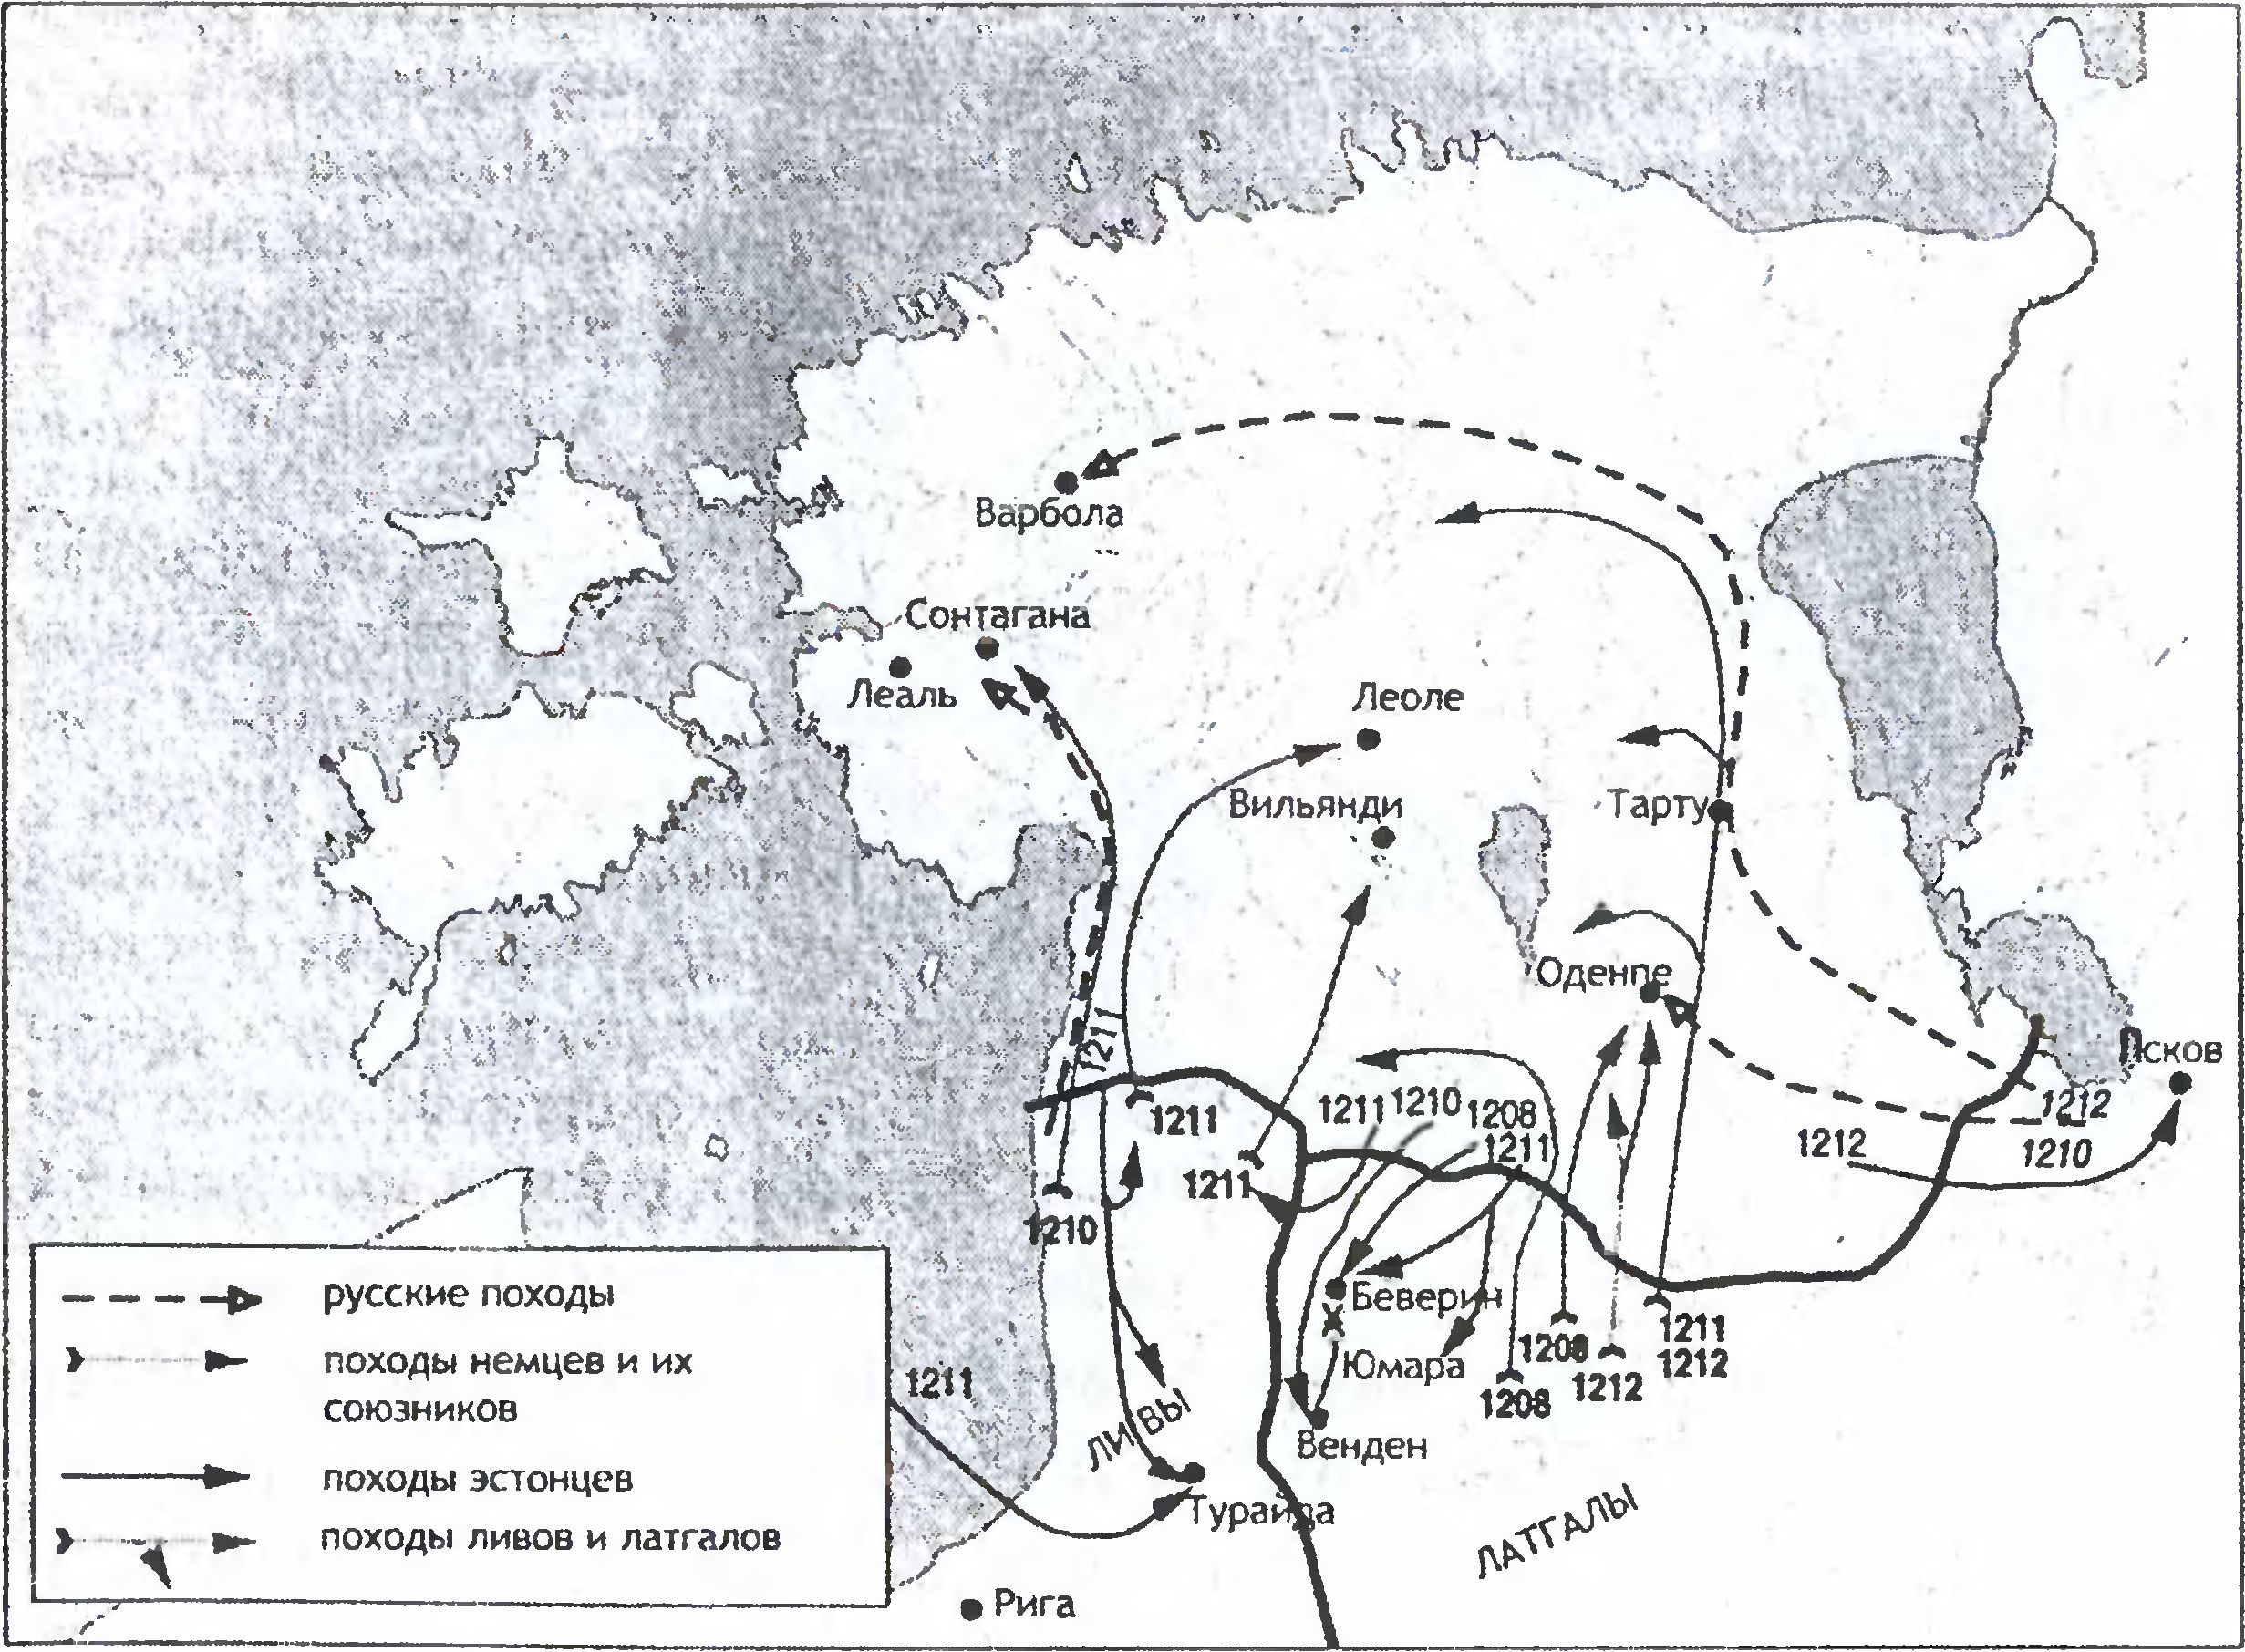 Походы в Эстонию в 1208—1212 гг.